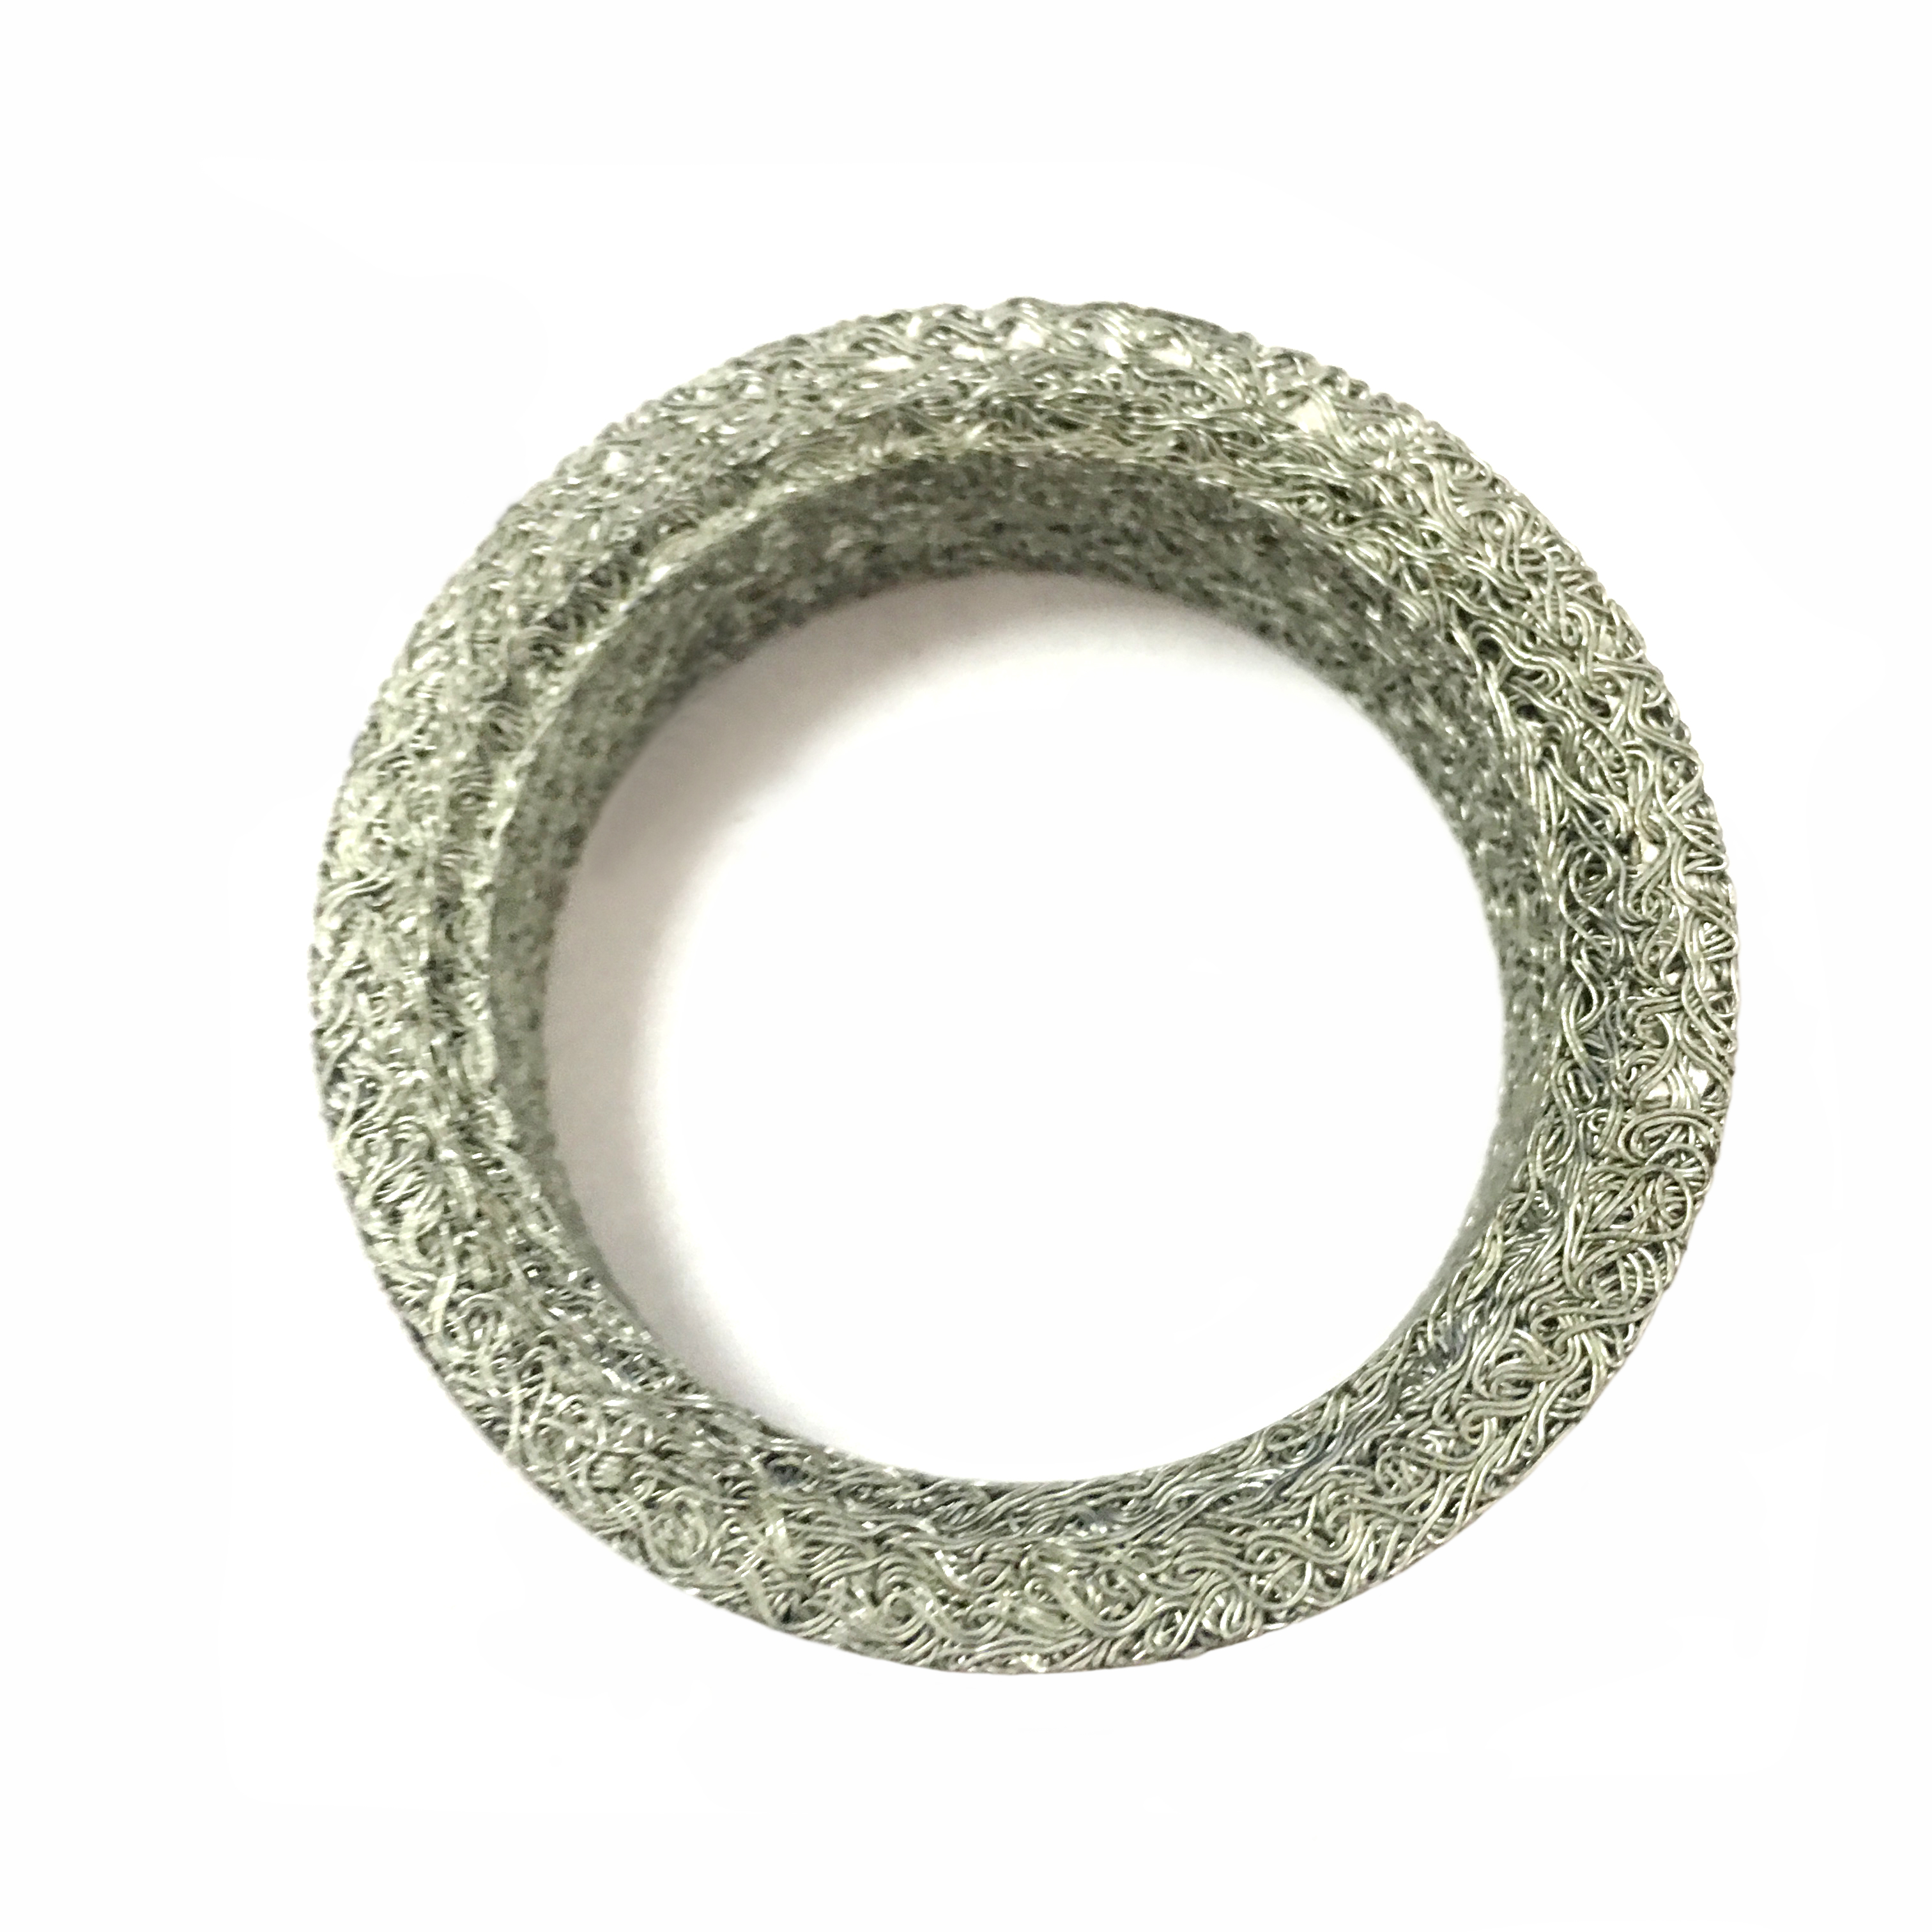 Suzuki And Alto Muffler Interface Ring Iron Mesh Material Muffler Gasket 